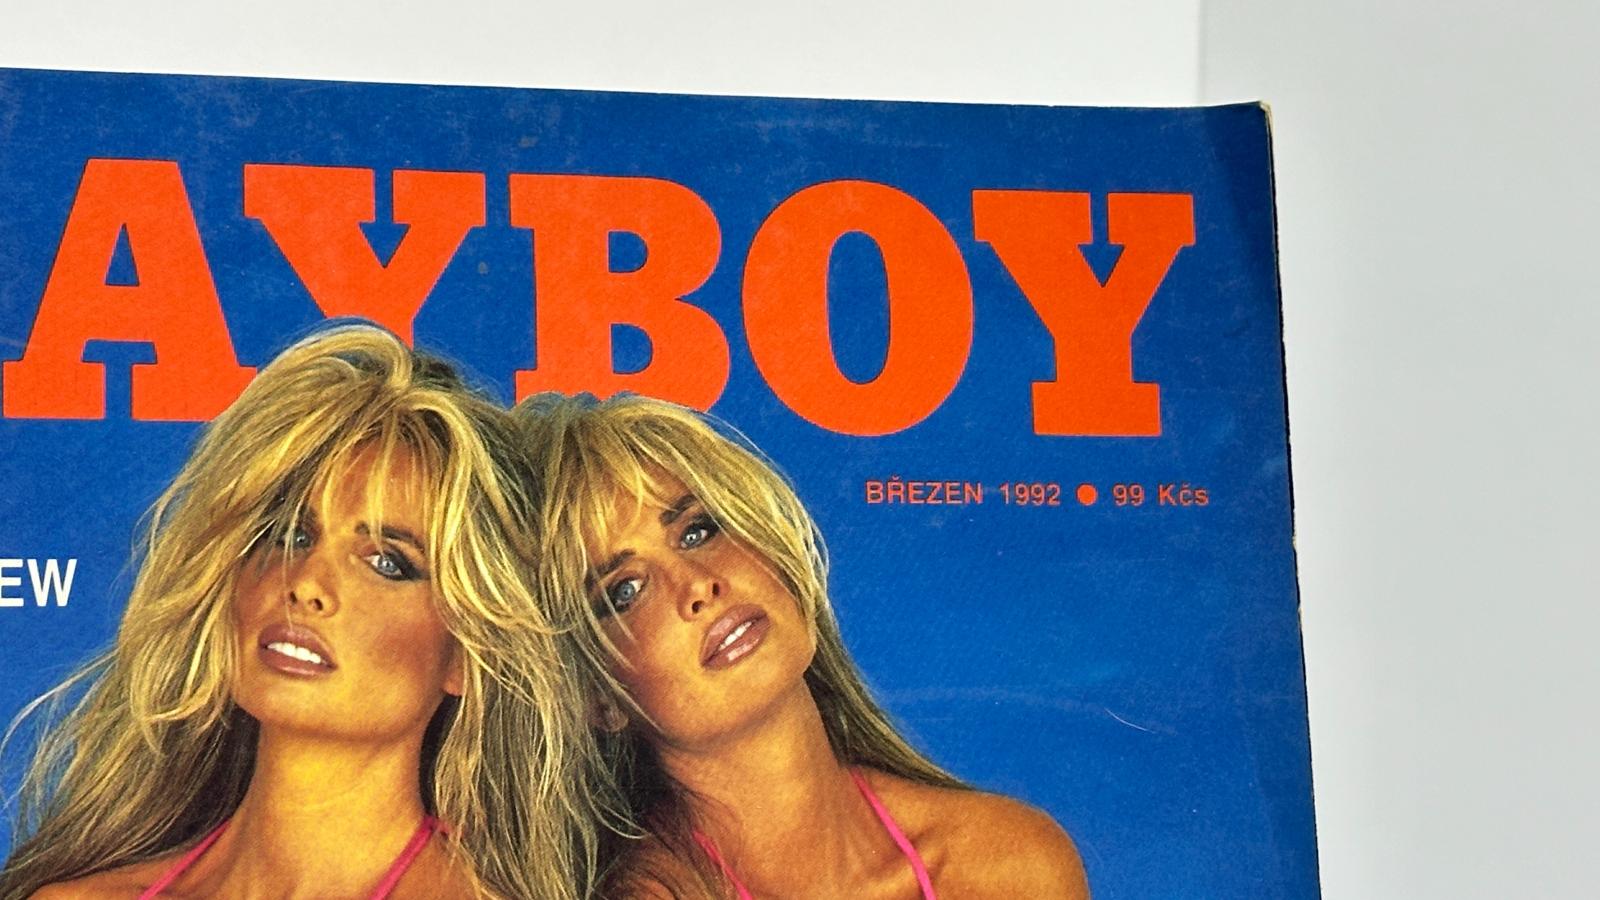 Erotika. Playboy 3/92. Plakát není. Renault 19, Škoda Favorit, Mercede - Erotika